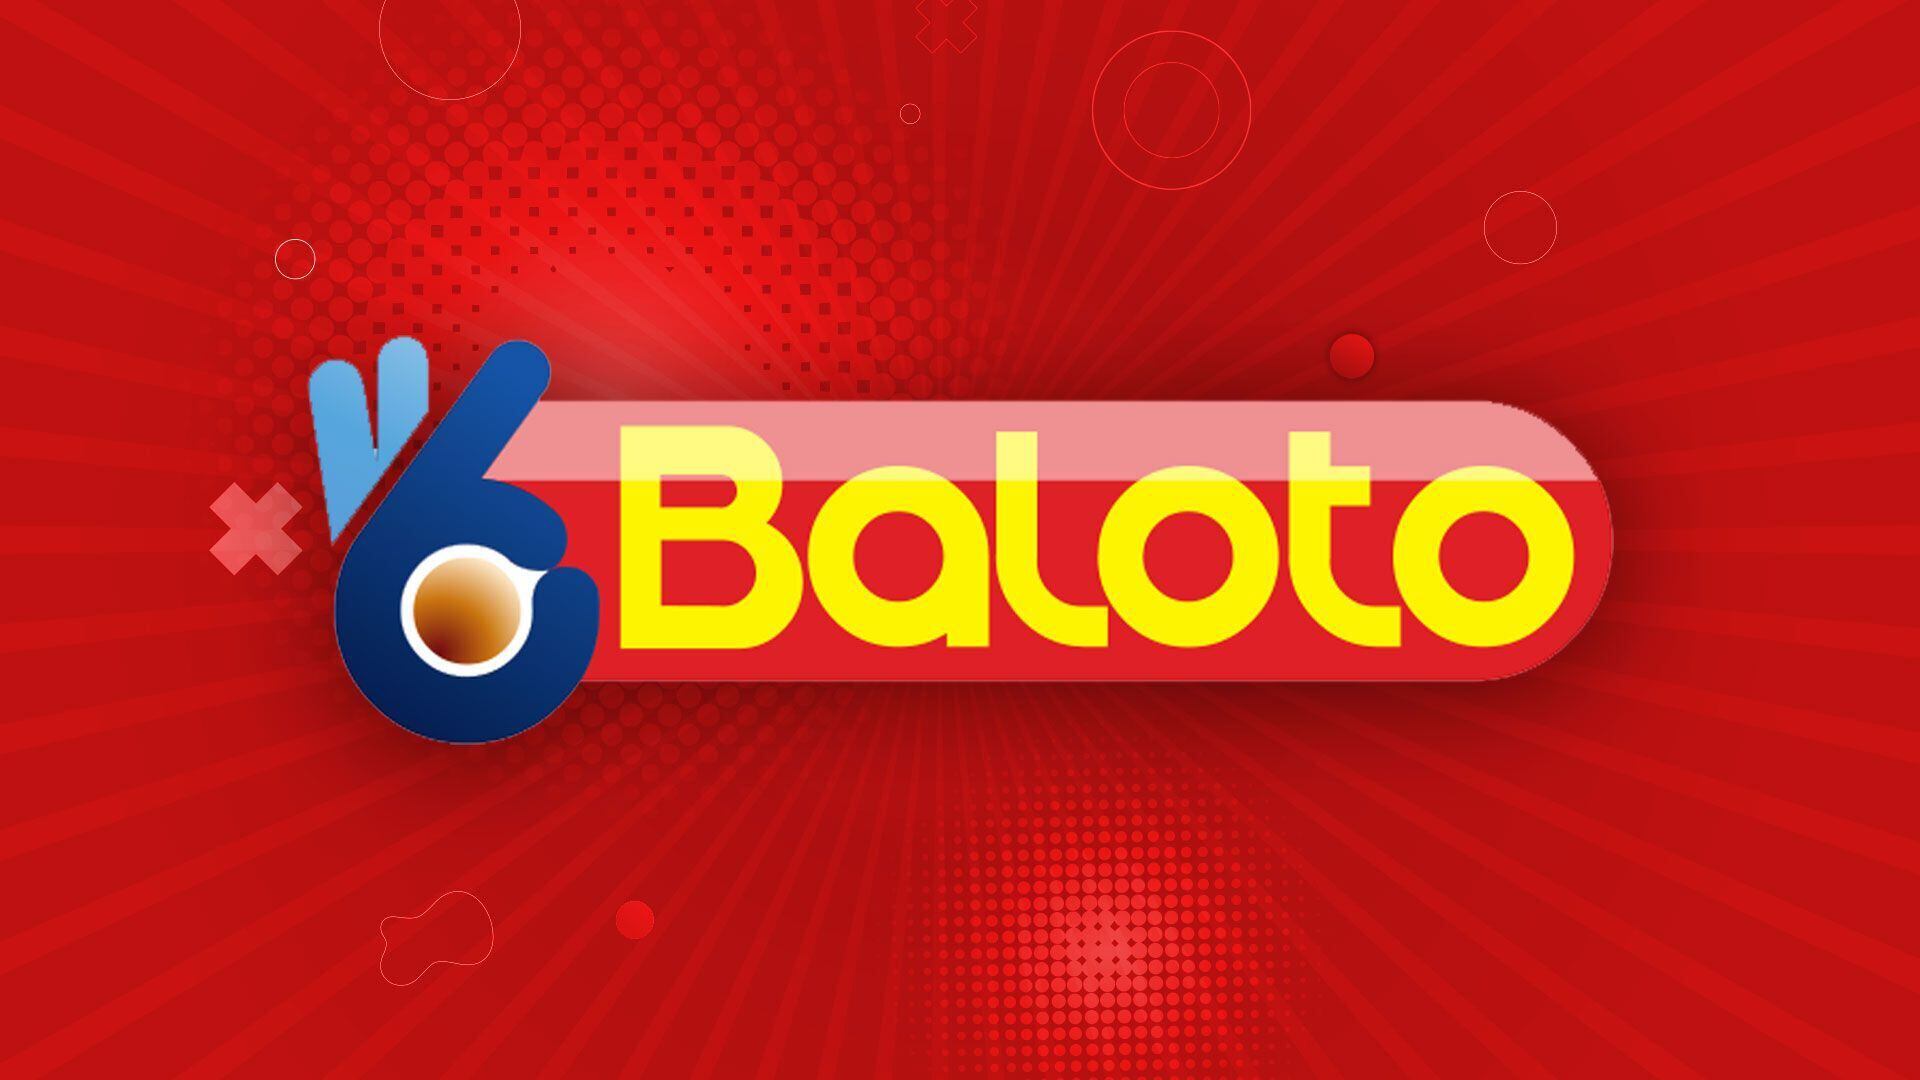 Resultados del Baloto: ganadores y números premiados del sábado 11 de mayo